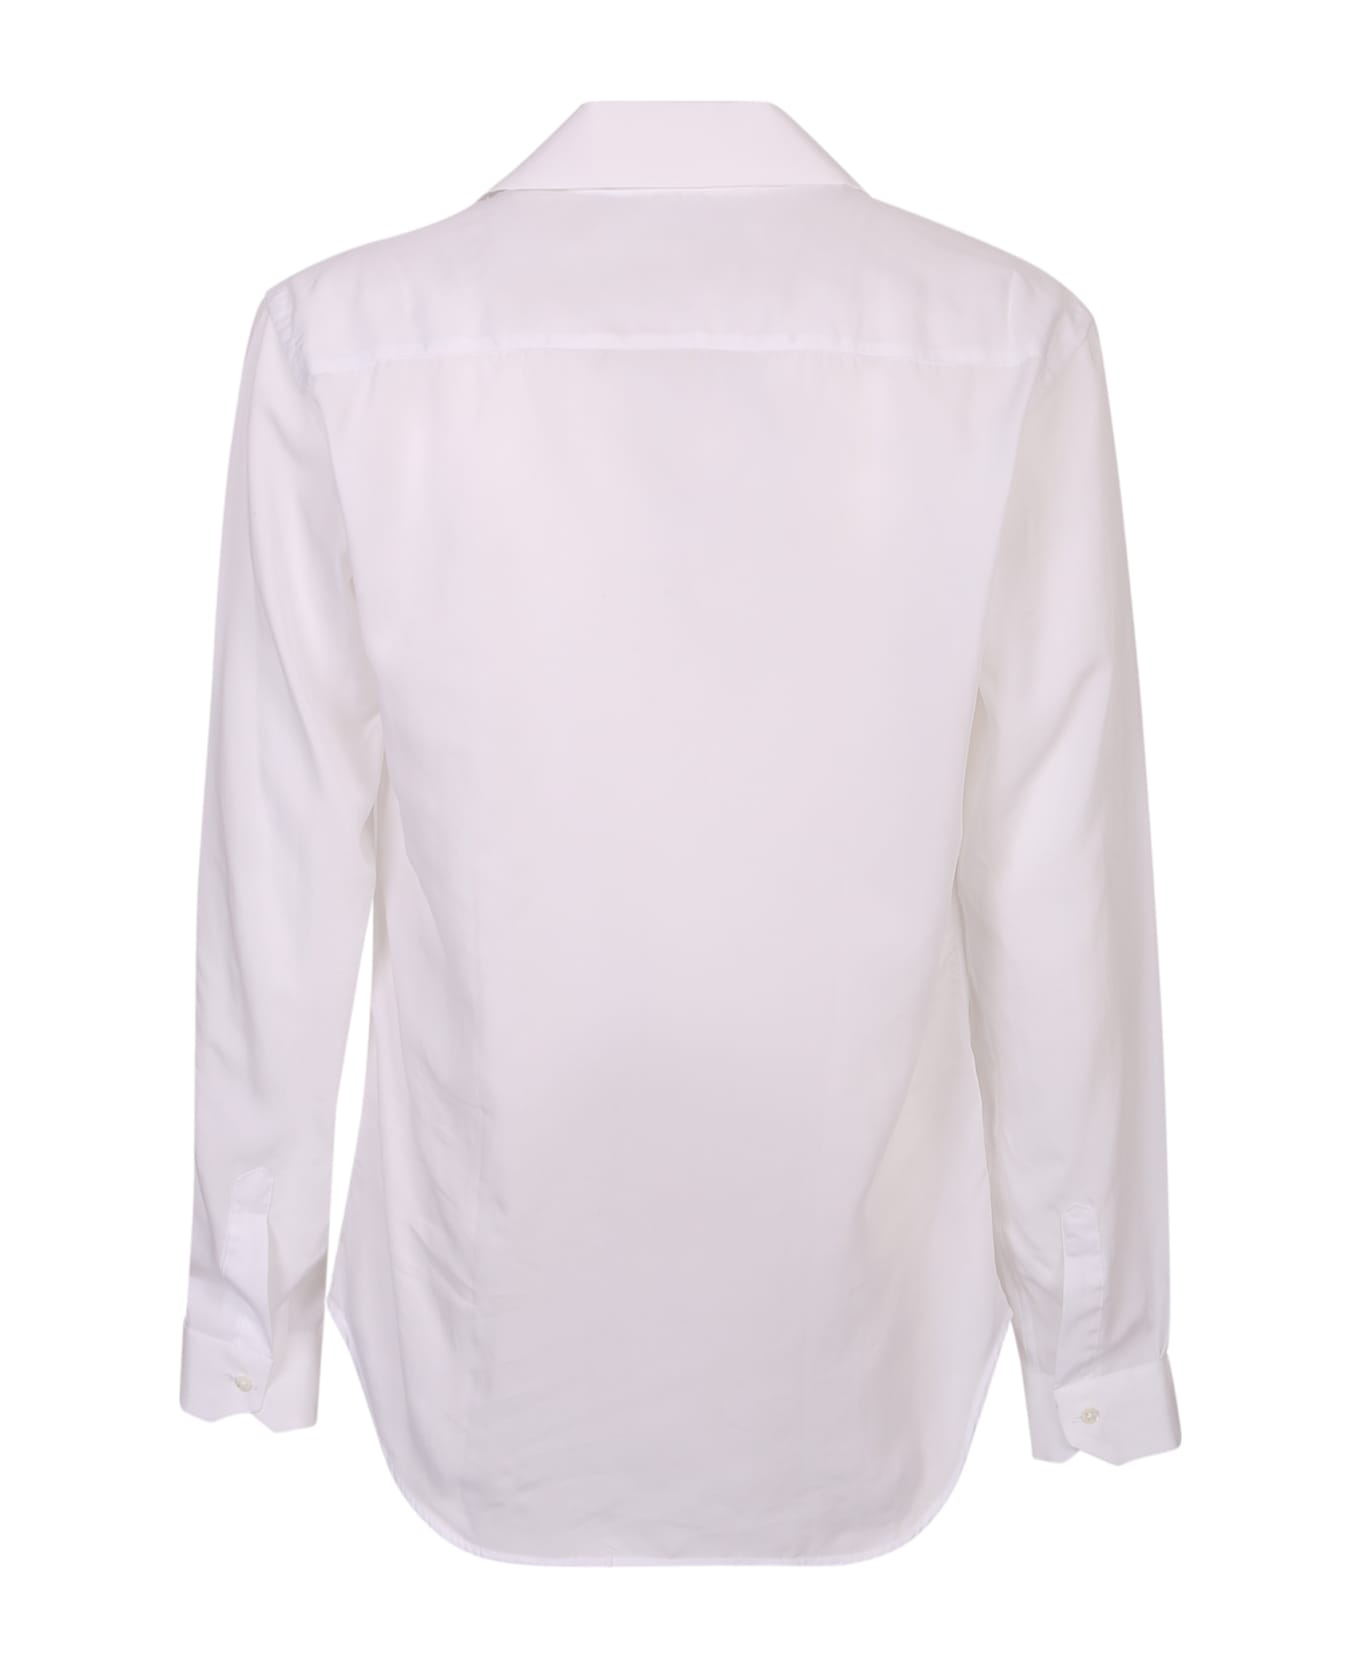 costumein Classic Shirt - White シャツ